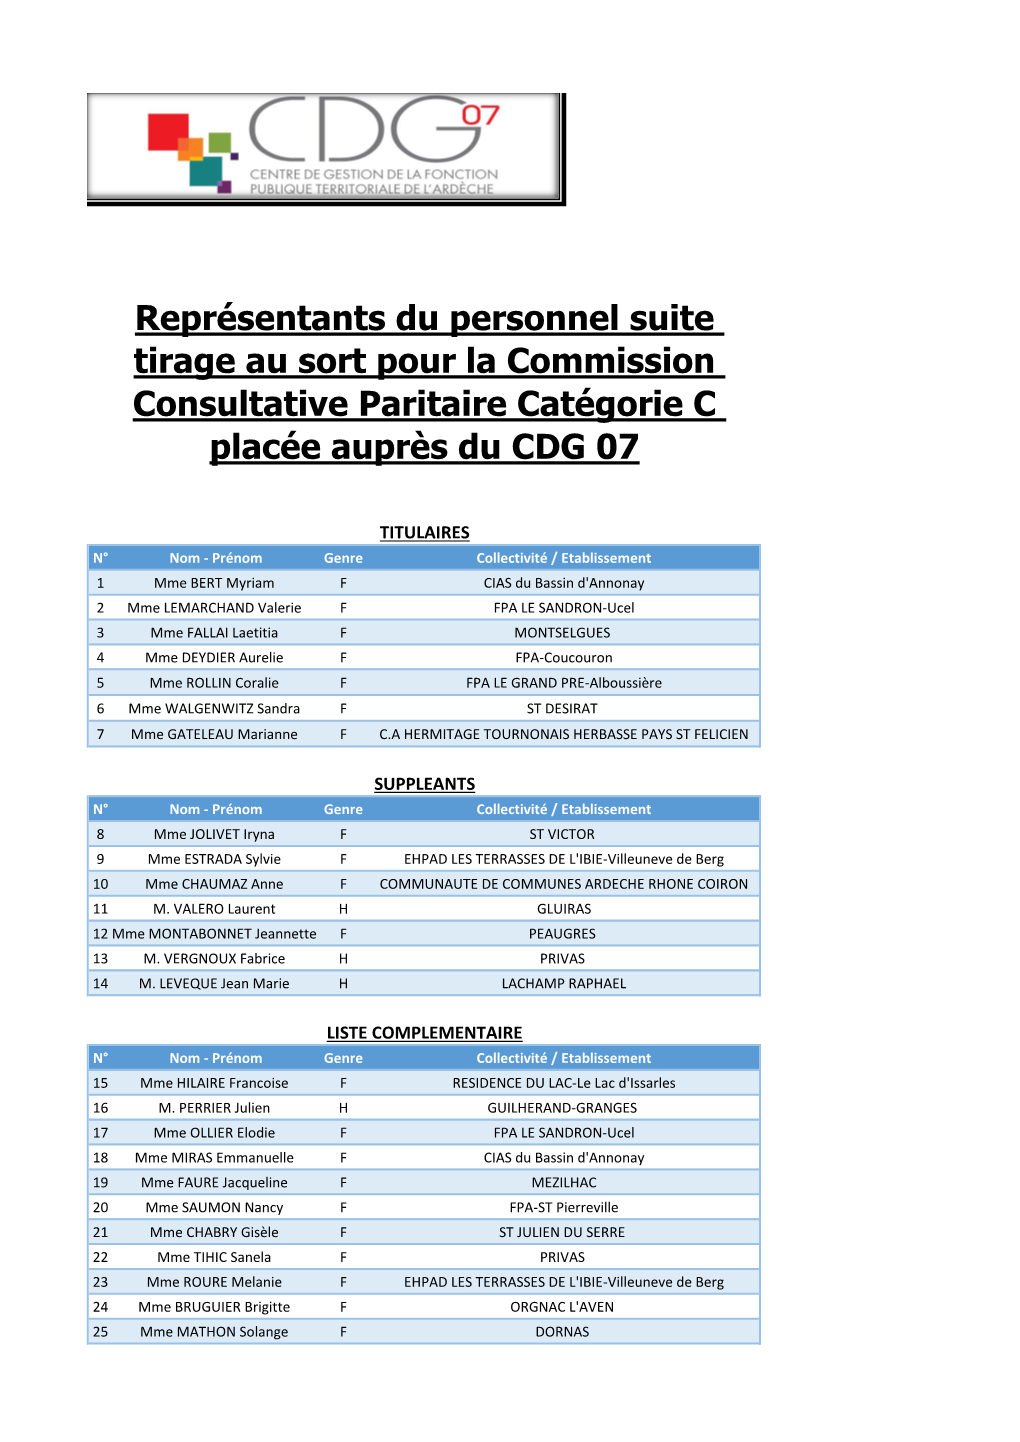 Représentants Du Personnel Suite Tirage Au Sort Pour La Commission Consultative Paritaire Catégorie C Placée Auprès Du CDG 07